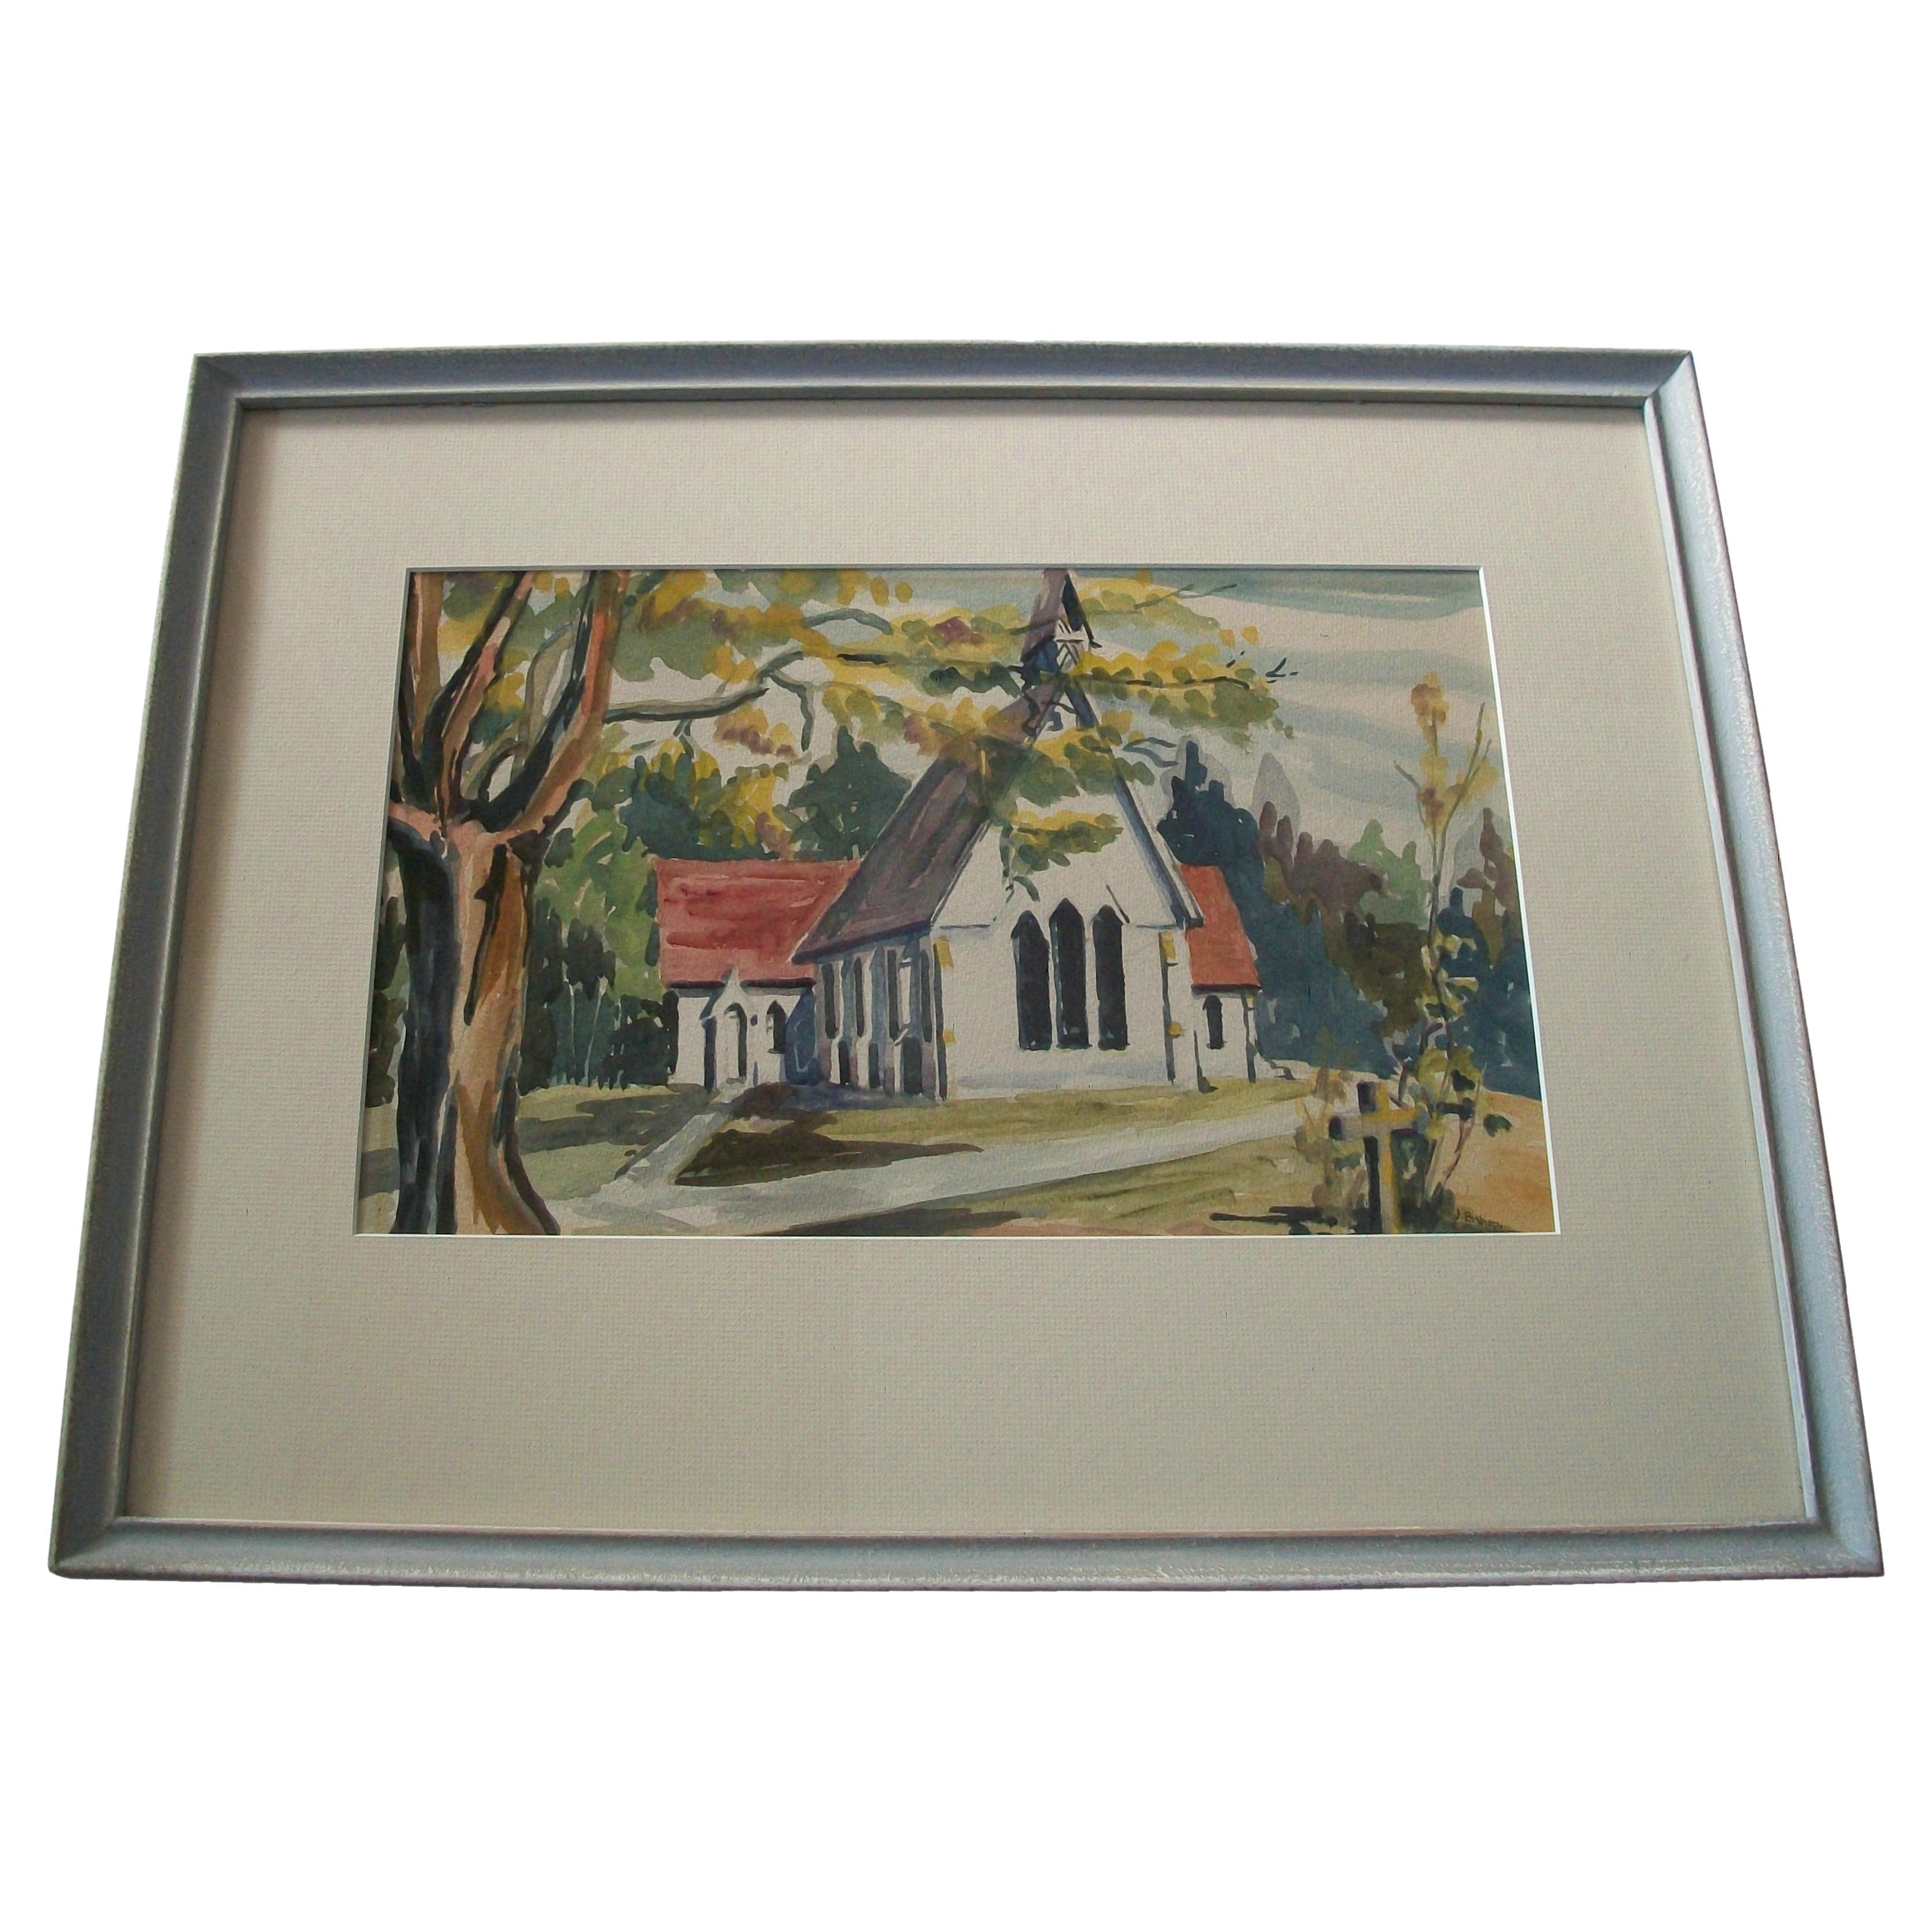 J. BISHOP (Artiste inconnu/non identifié) - 'Sans titre' - Aquarelle vintage sur papier représentant une église et un paysage - contenue dans un cadre vintage peint en gris avec un panneau mat et un verre - London, Ontario étiquette de l'encadreur